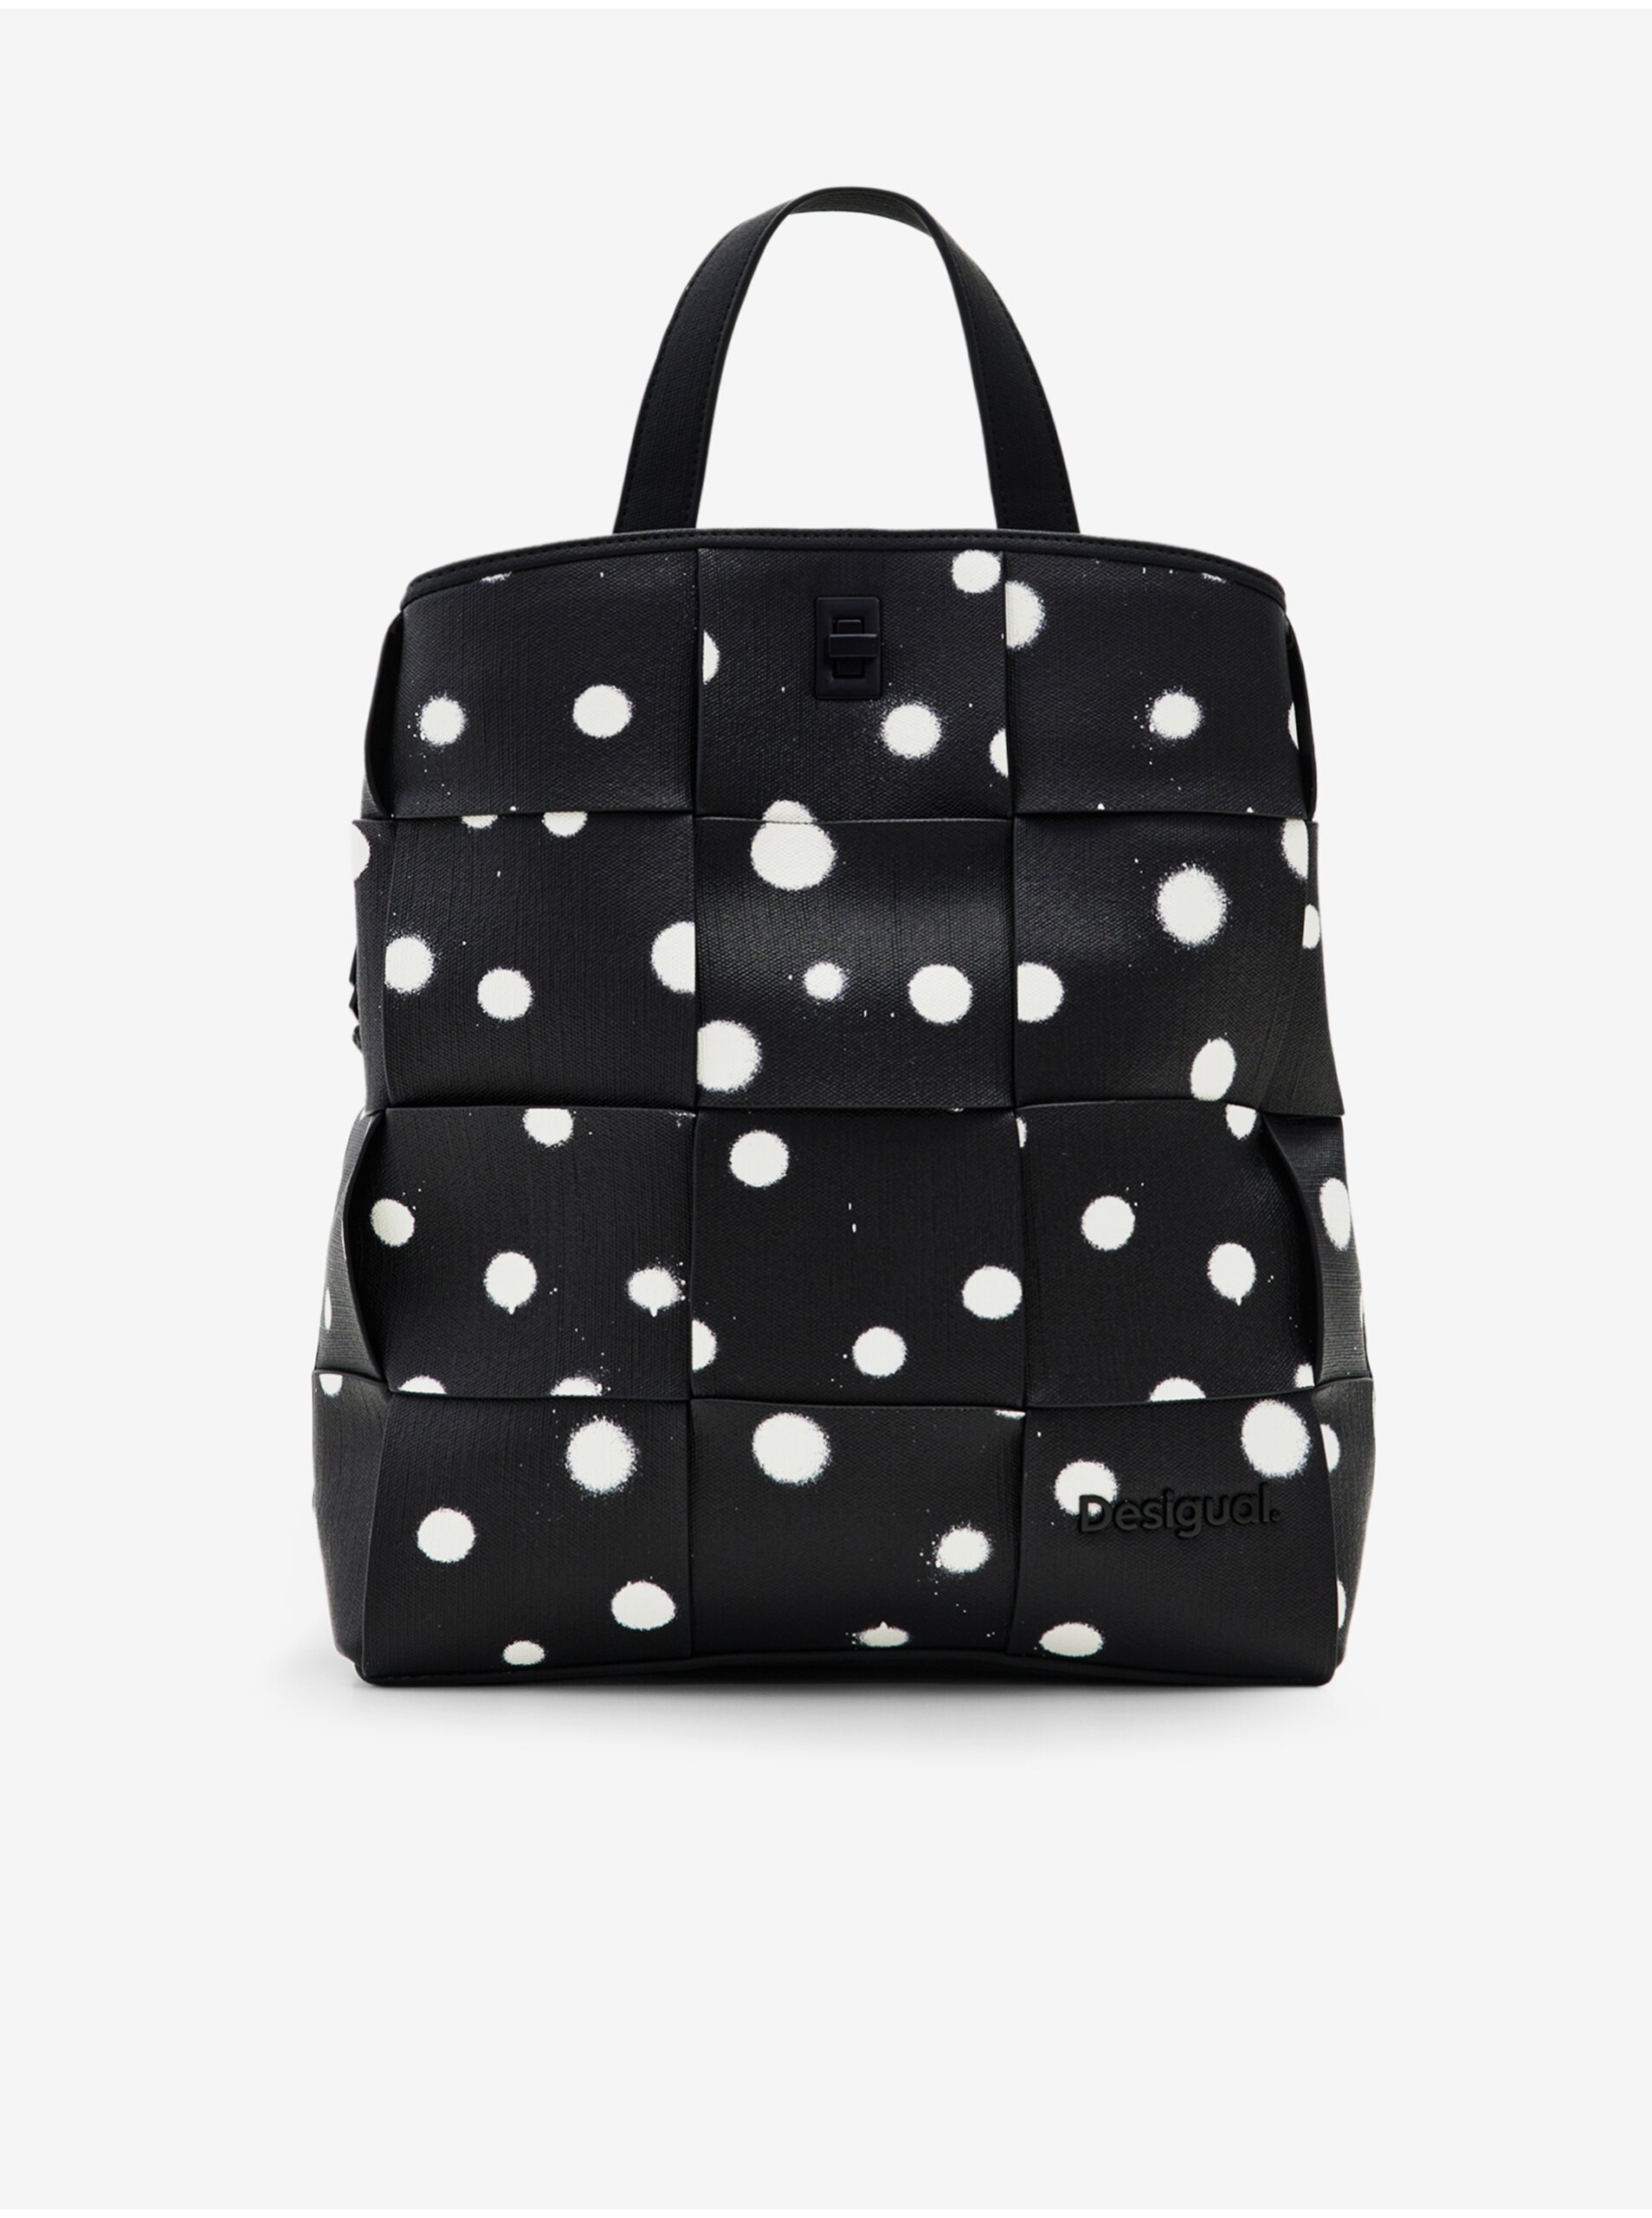 Desigual New Splatter Sumy Mini Women's Patterned Backpack - Women